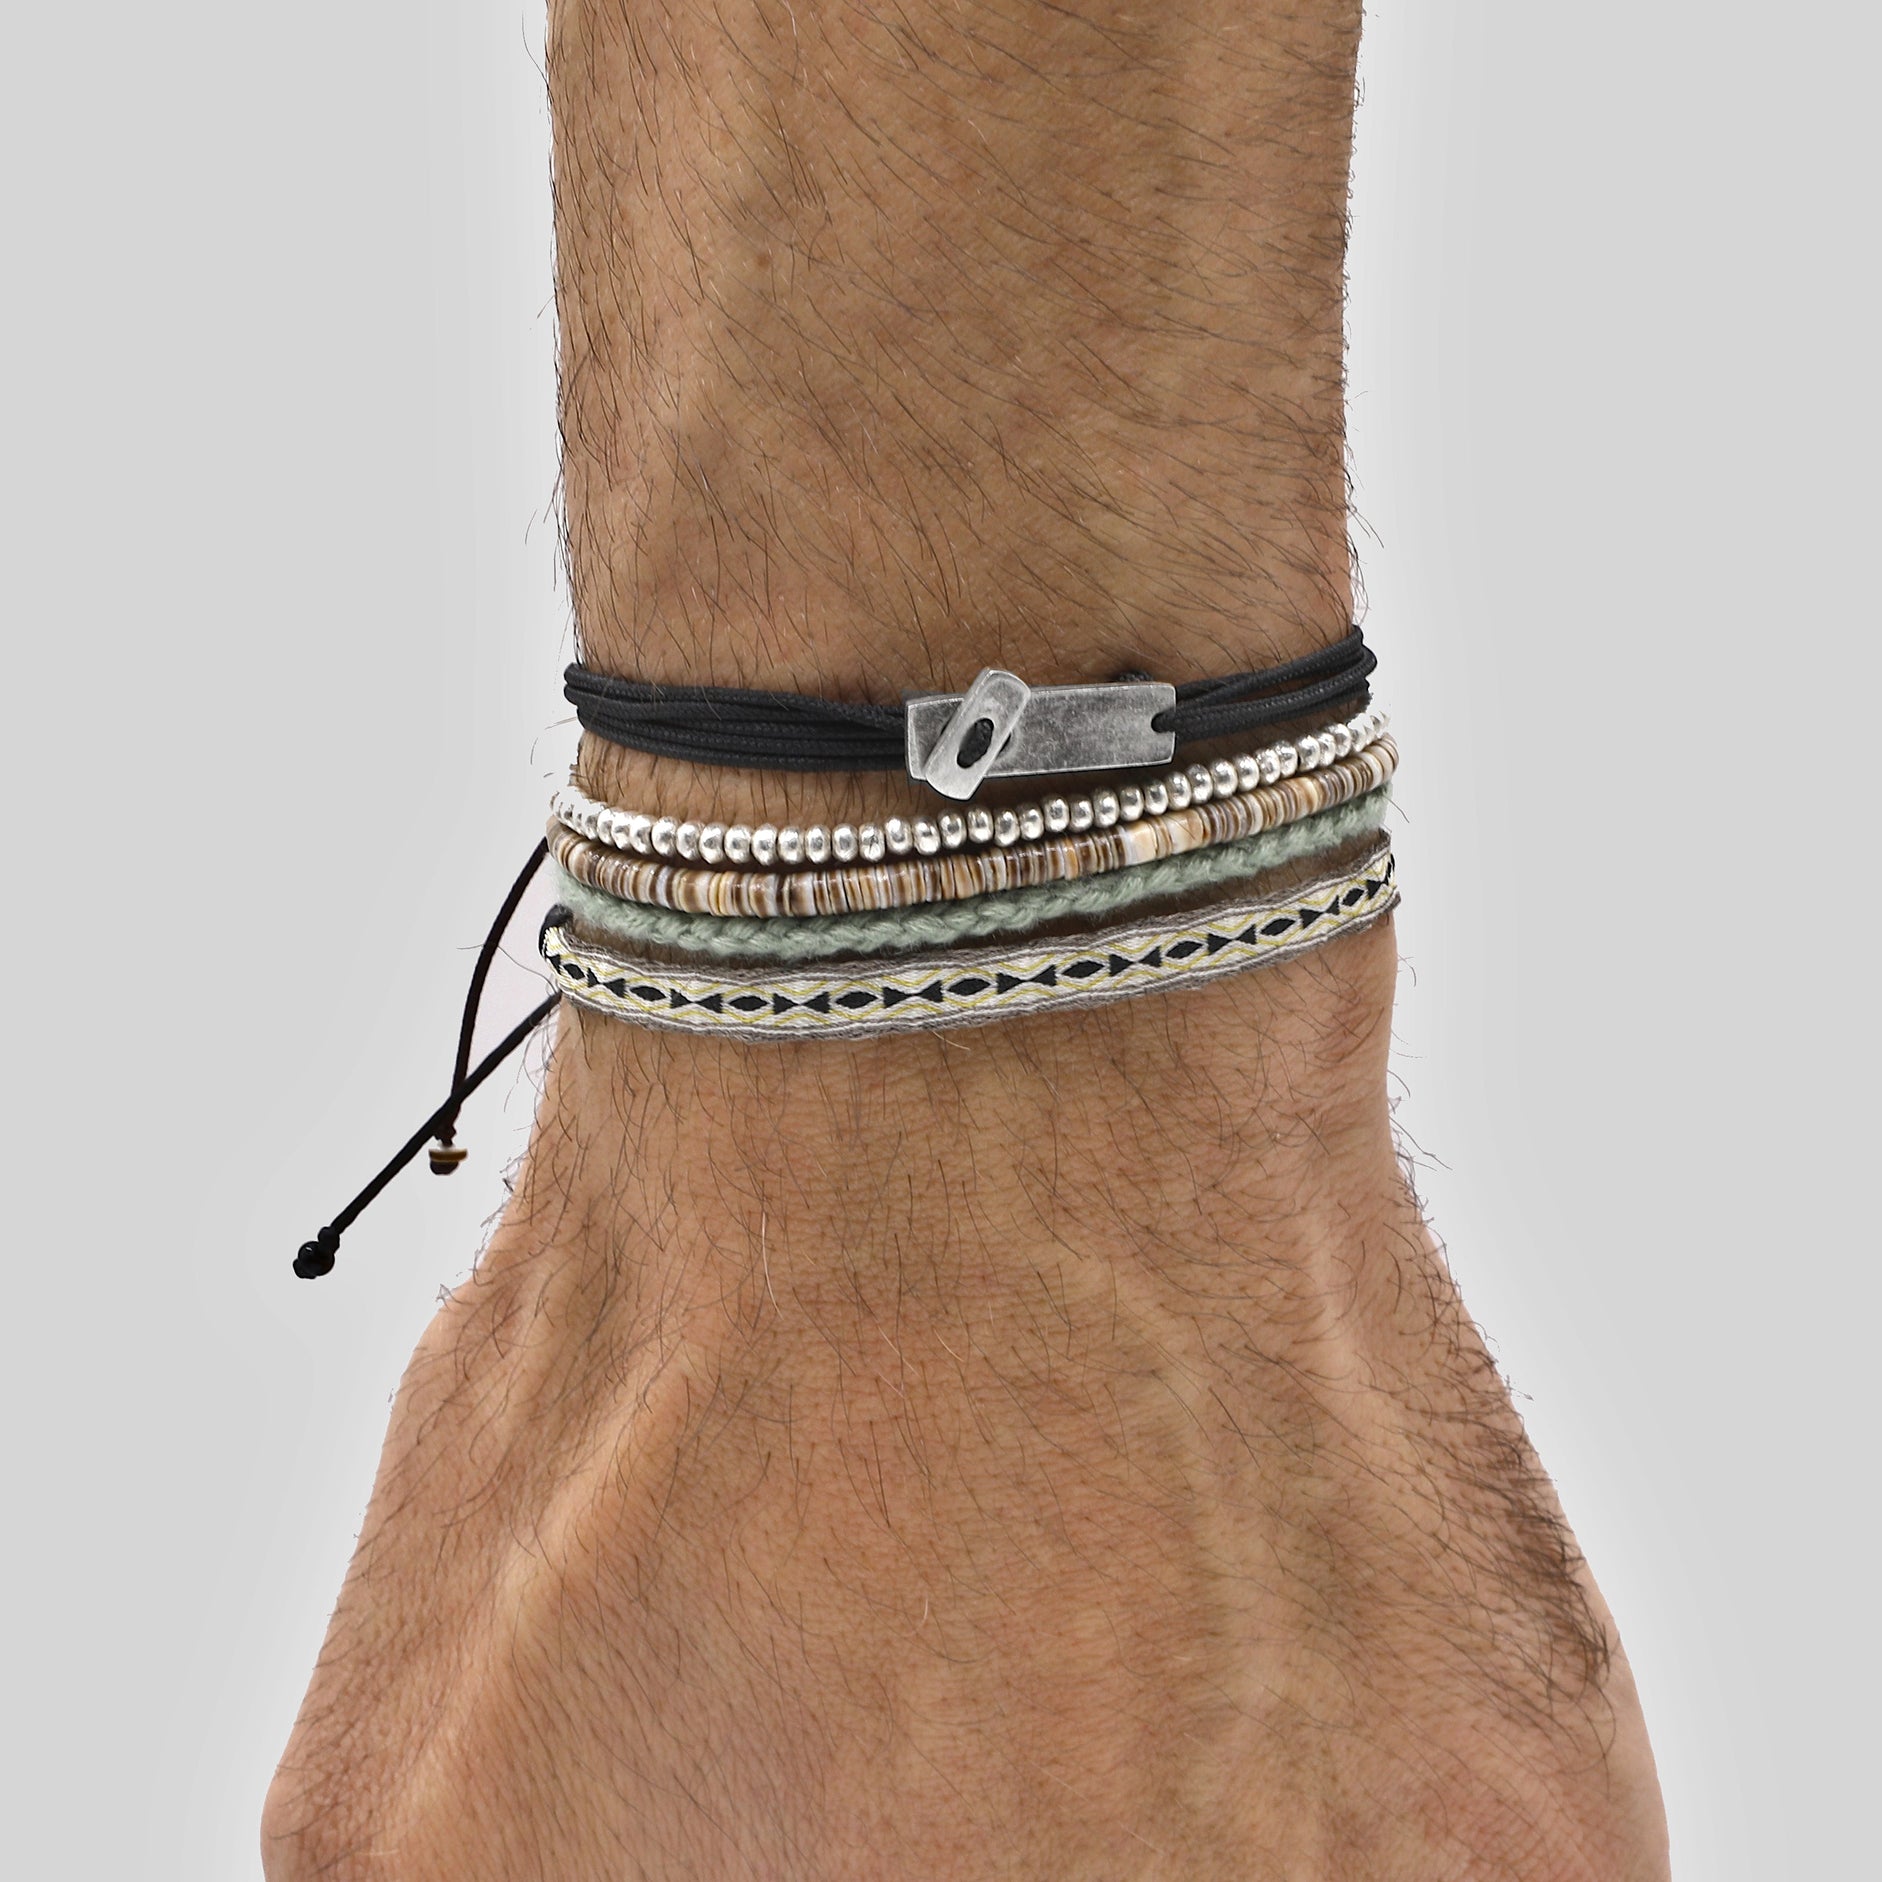 Multi Wraps String Bracelet With Sterling Silver Button (Black)-Bracelet-Kompsós